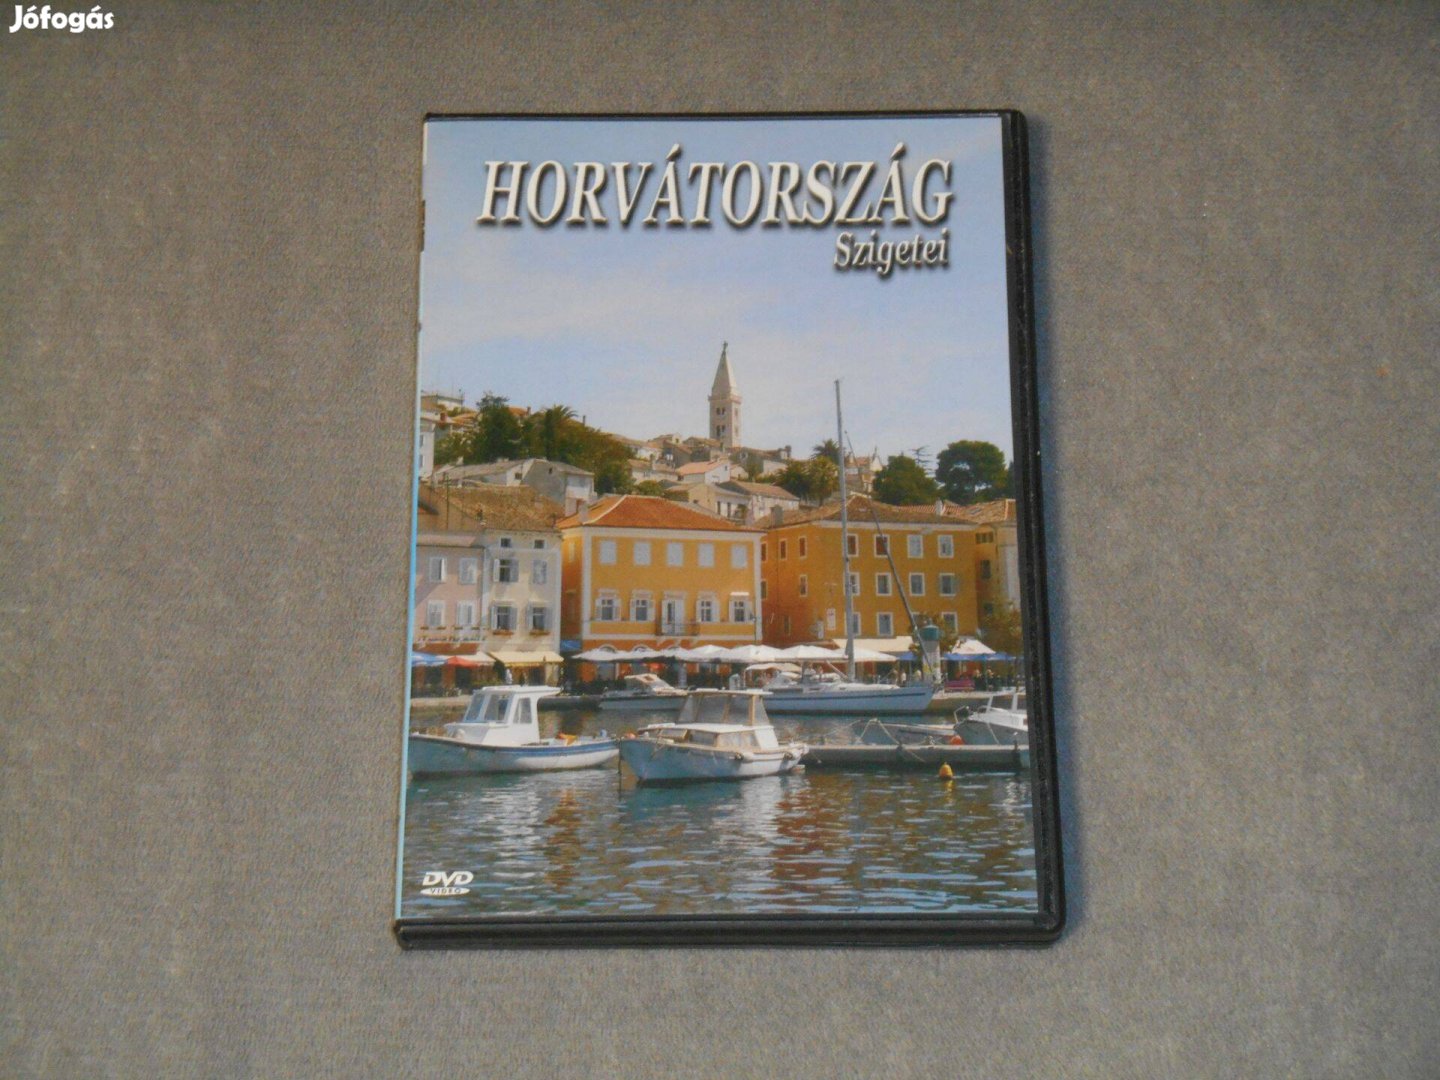 Horvátország szigetei DVD film útifilm Ingyenes, olvasd el a leírást!